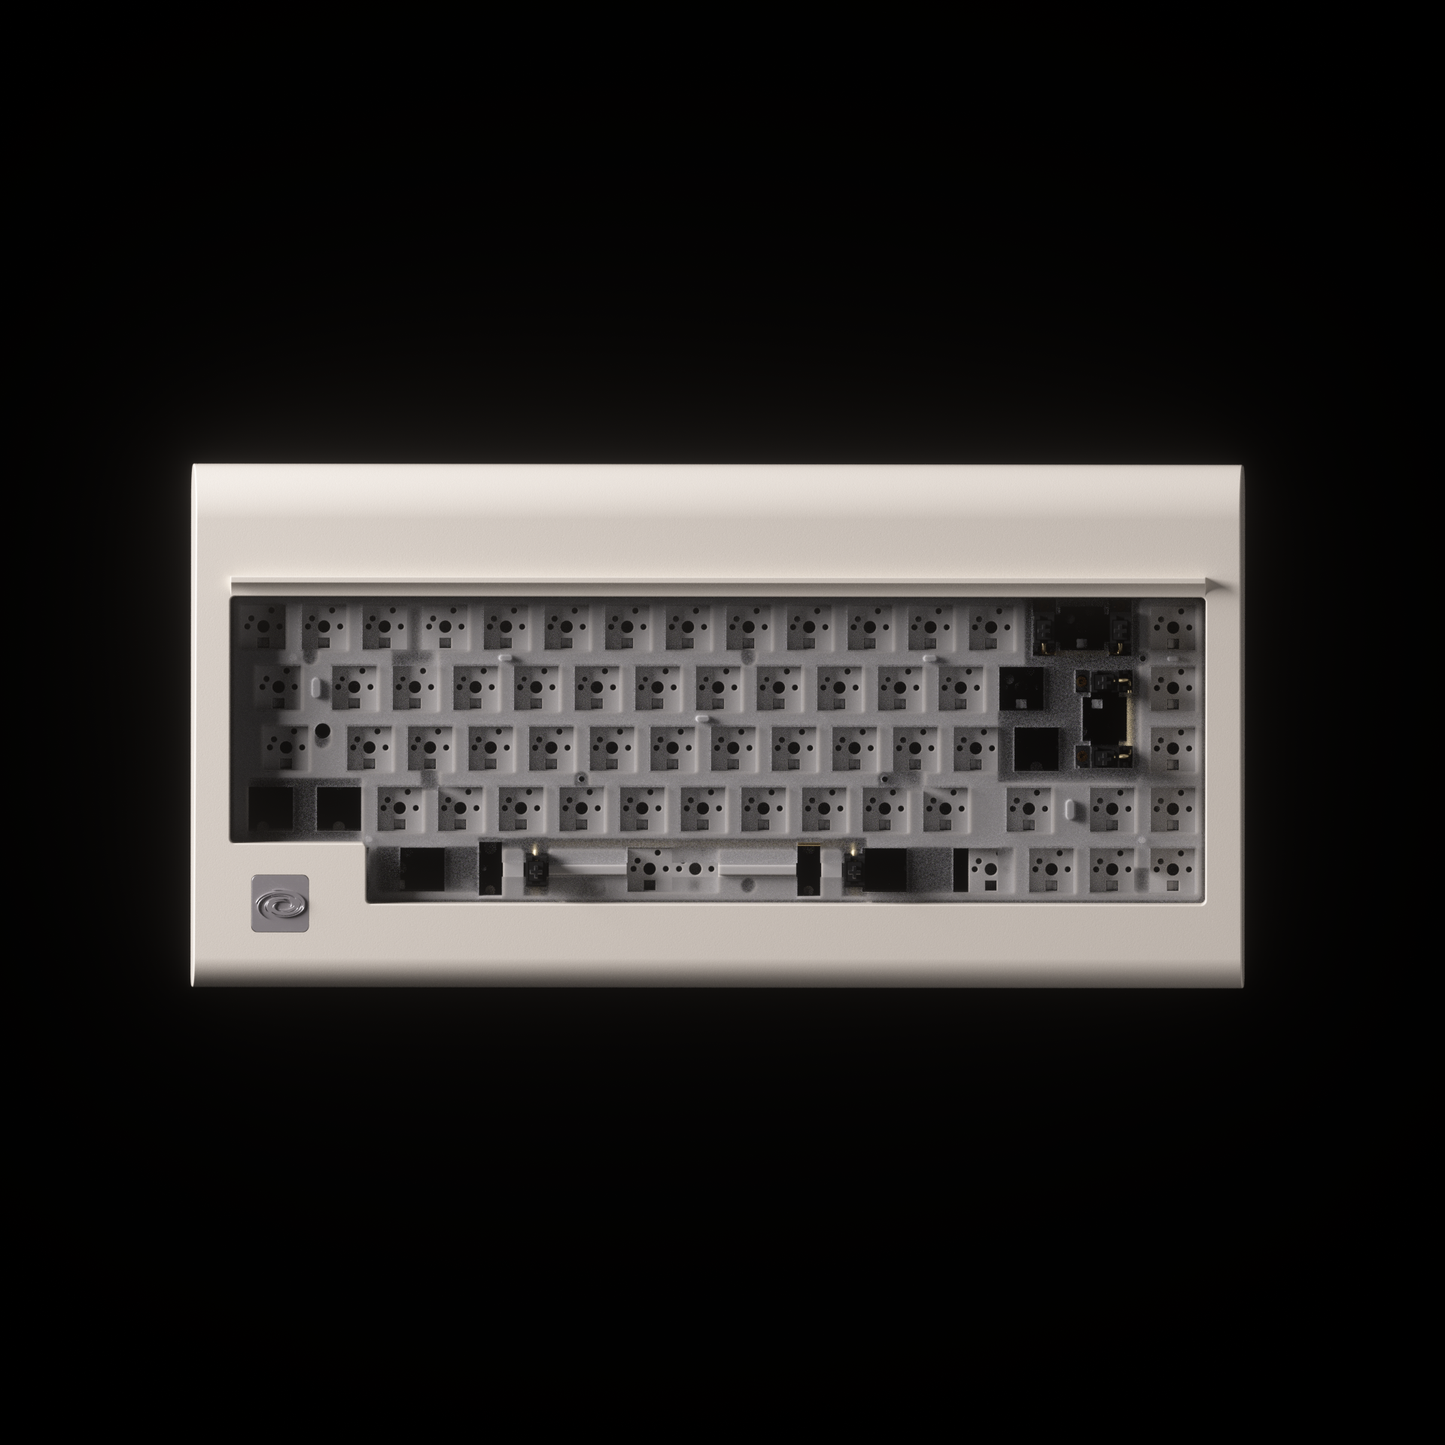 PC66 Barebone (66 Key)